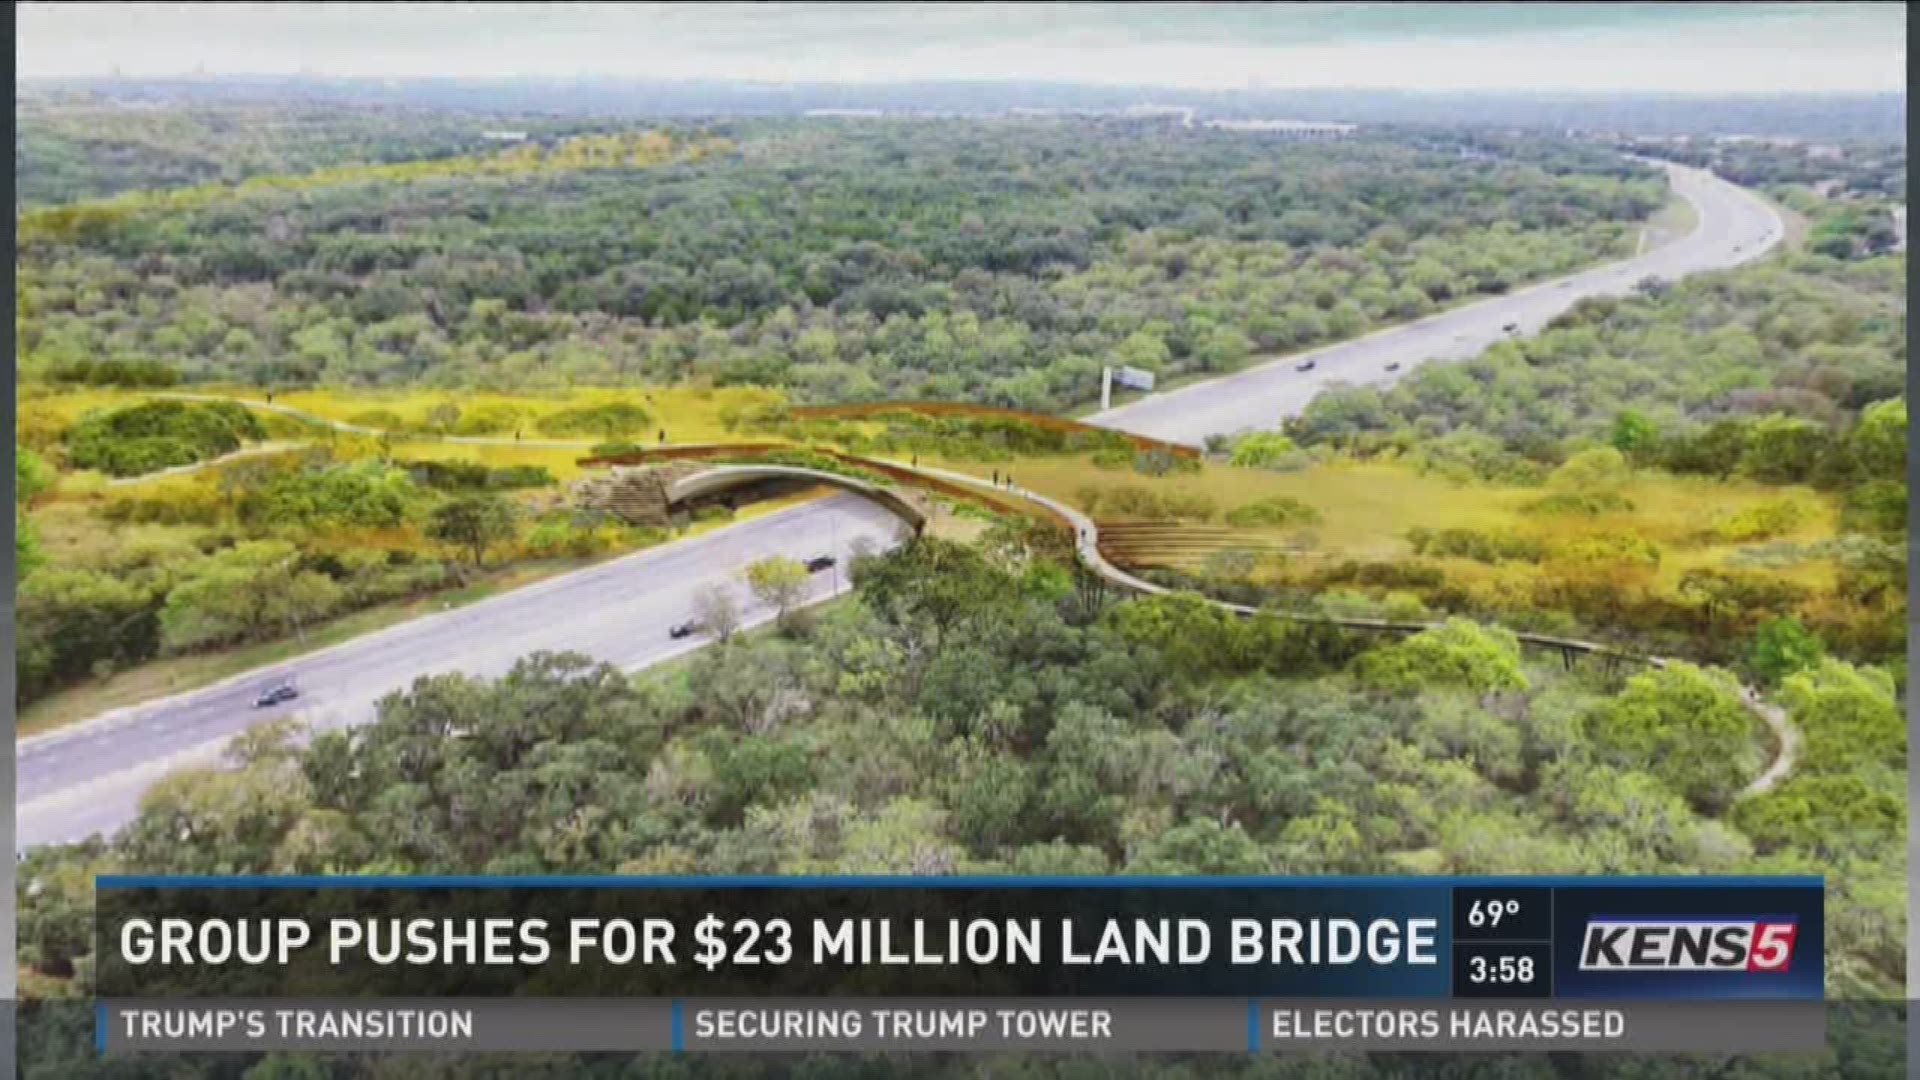 Group pushes for $23 million land bridge